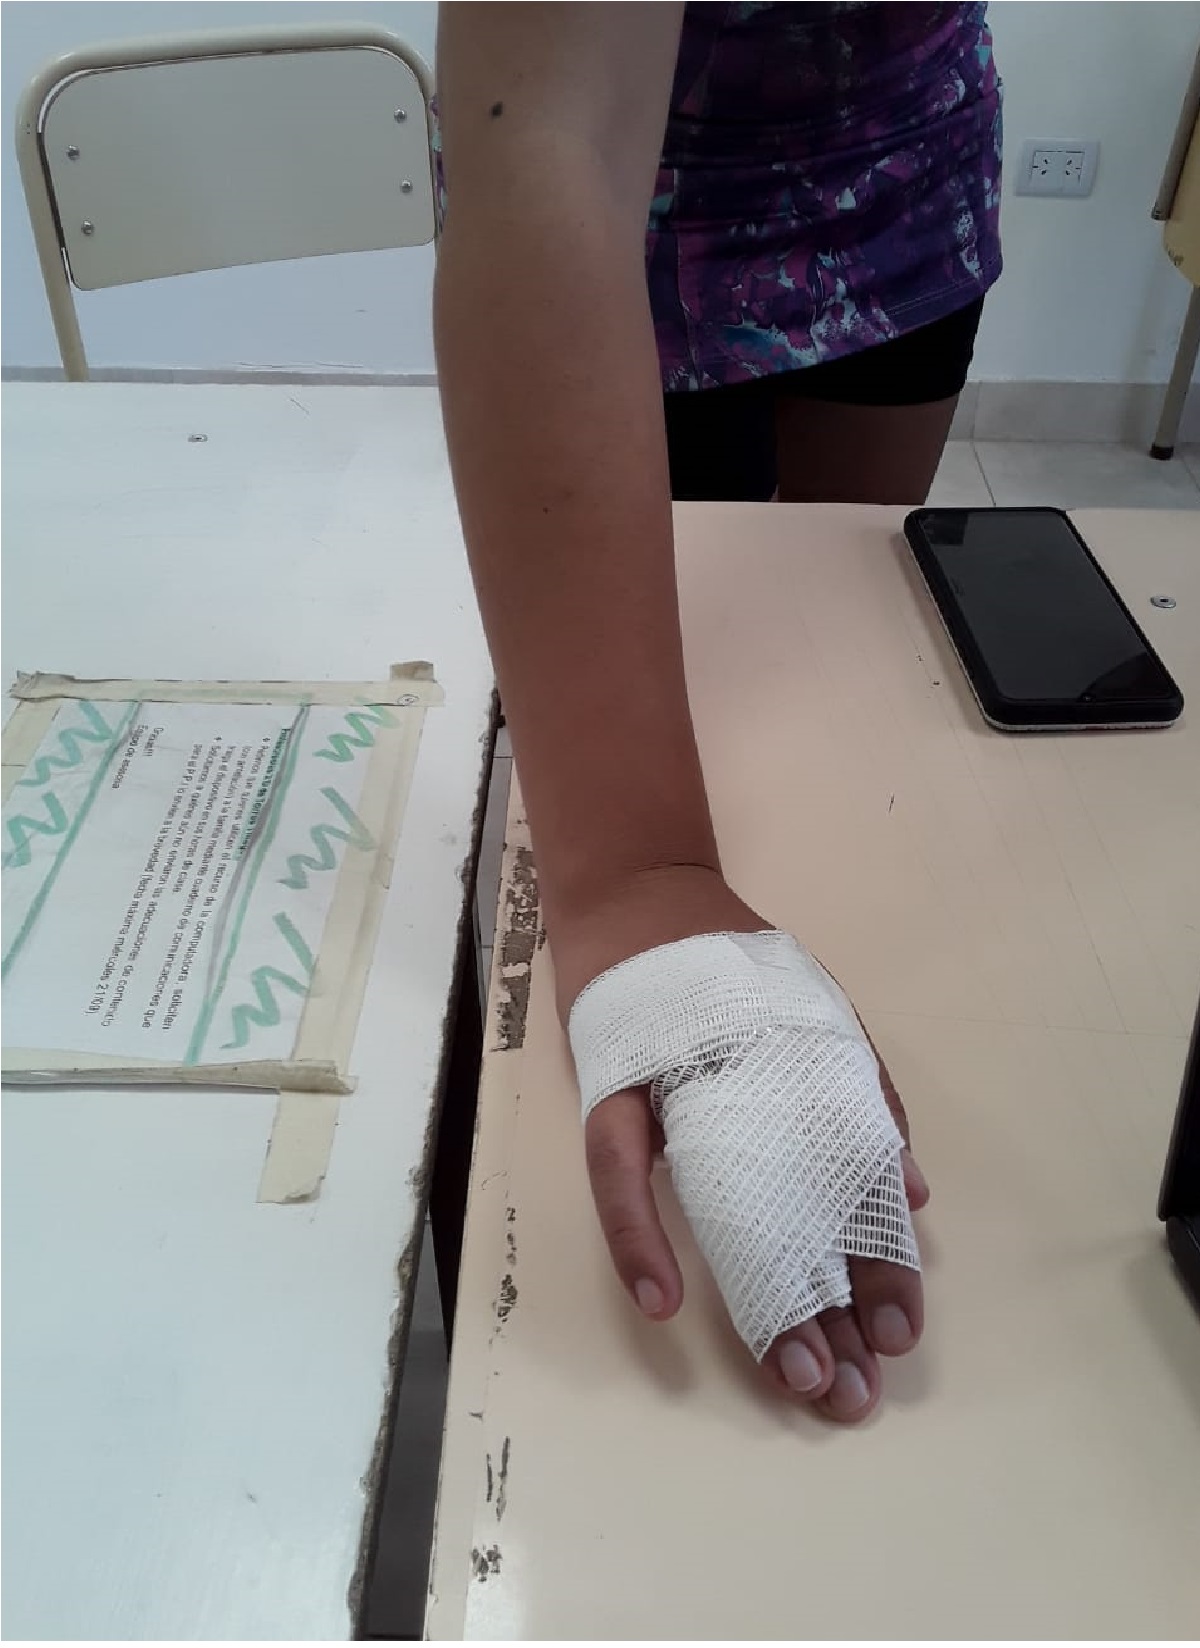 Una de las preceptoras fue golpeada en su mano y otra amenazada. Foto: Aten capital